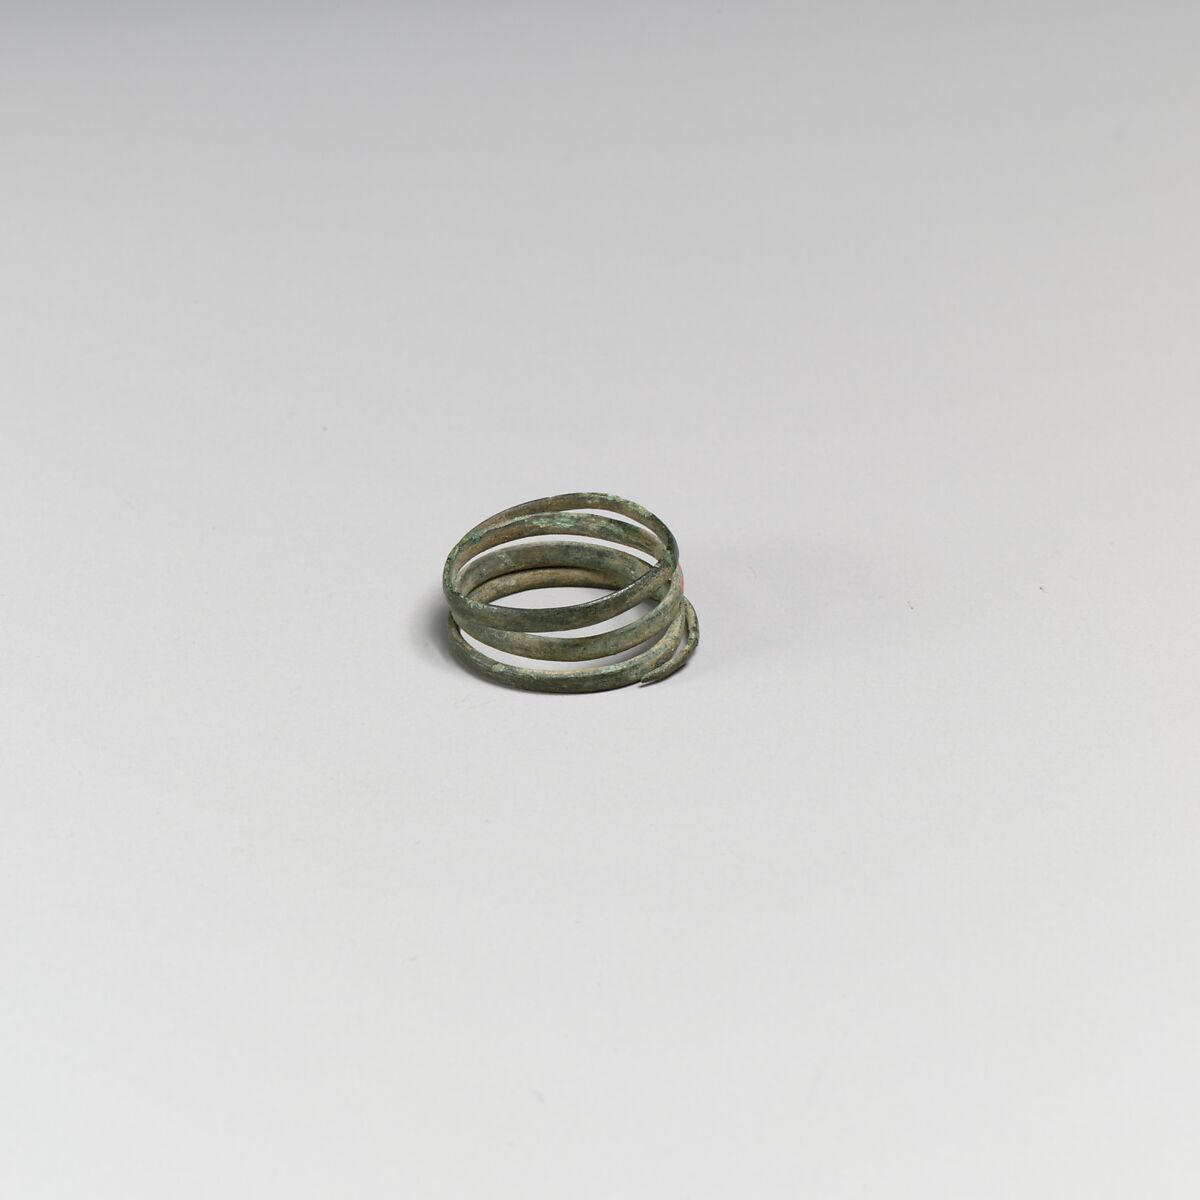 Two bronze spirals, Bronze, Minoan 